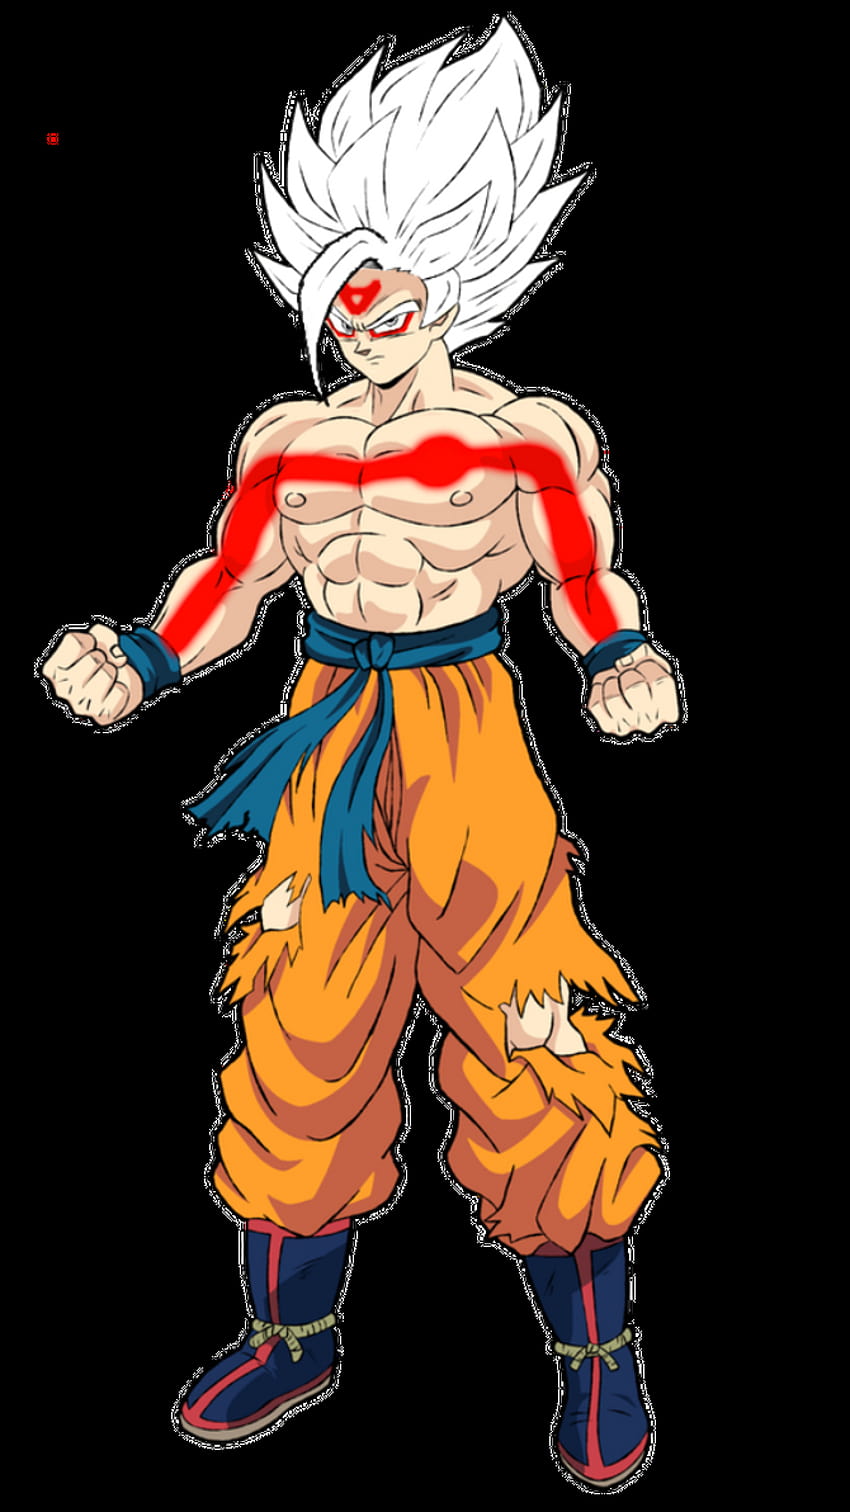 Cảm nhận sức mạnh và thể hiện trình độ của họa sĩ, bức tranh Goku SSJ4 đầy mê hoặc sẽ là điểm nhấn cho bất kỳ ai yêu thích hoạt hình, anime hay manga.